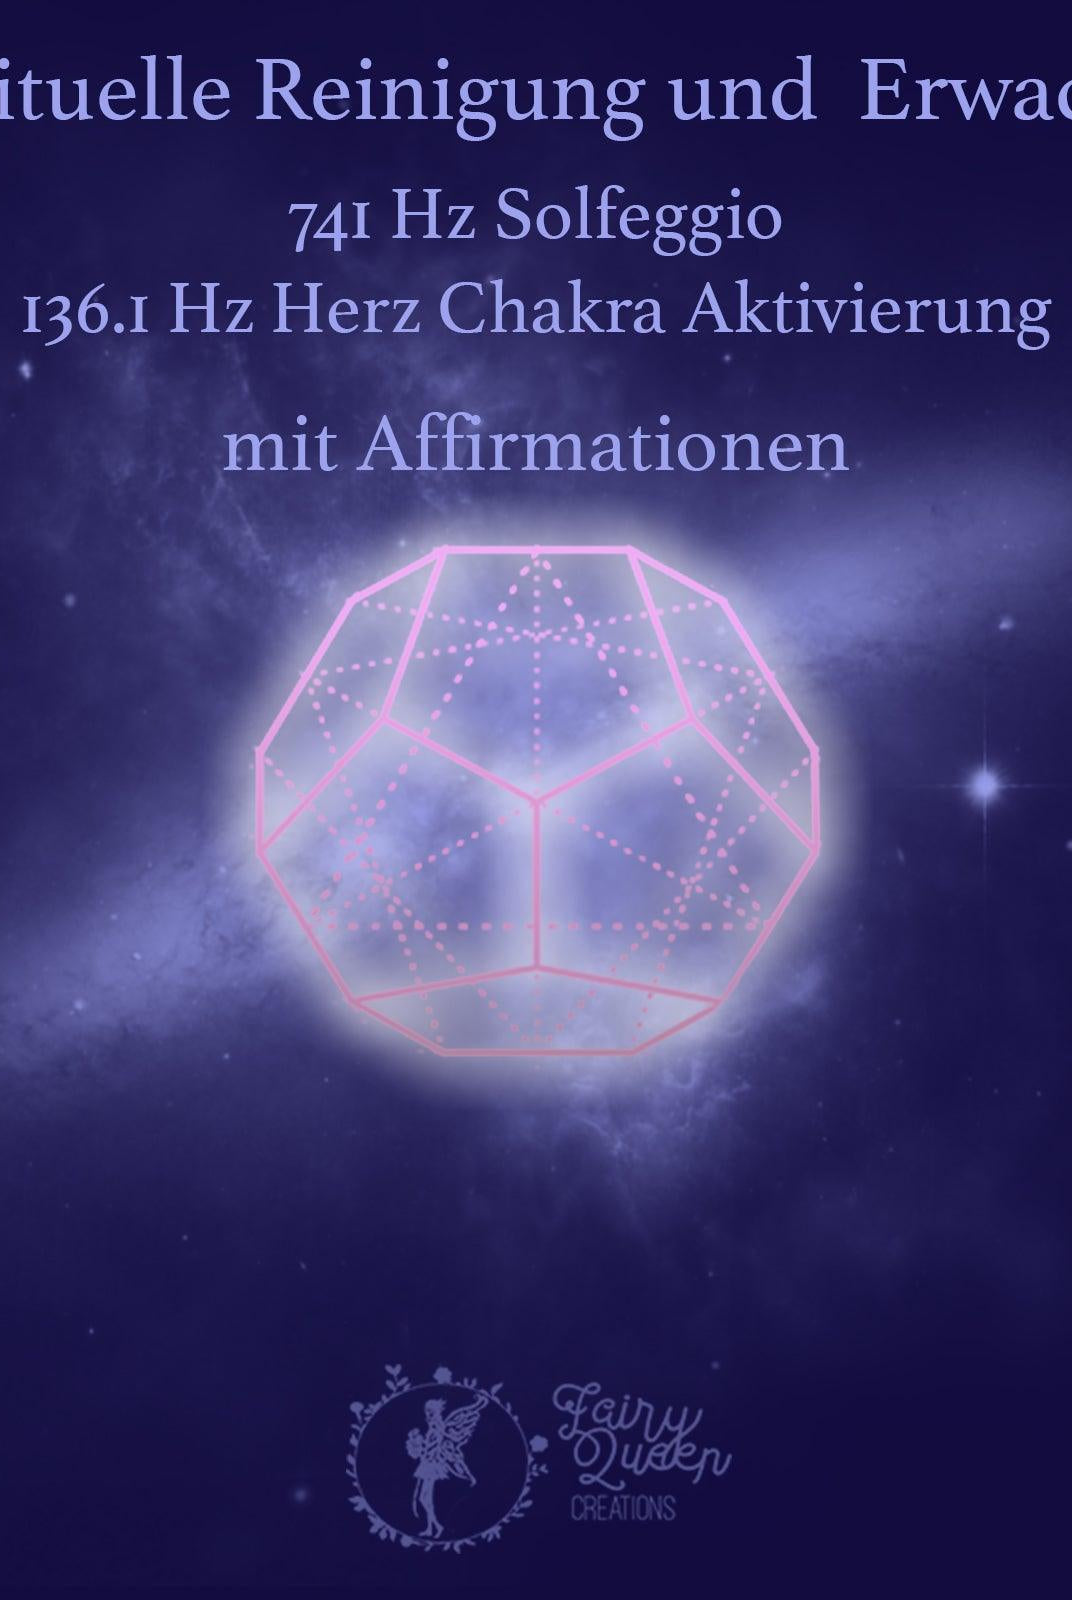 741Hz | 136.1Hz | Spirituelle Reinigung | Erwachen | Dodekaeder Energie - Affirmationen - Buddala